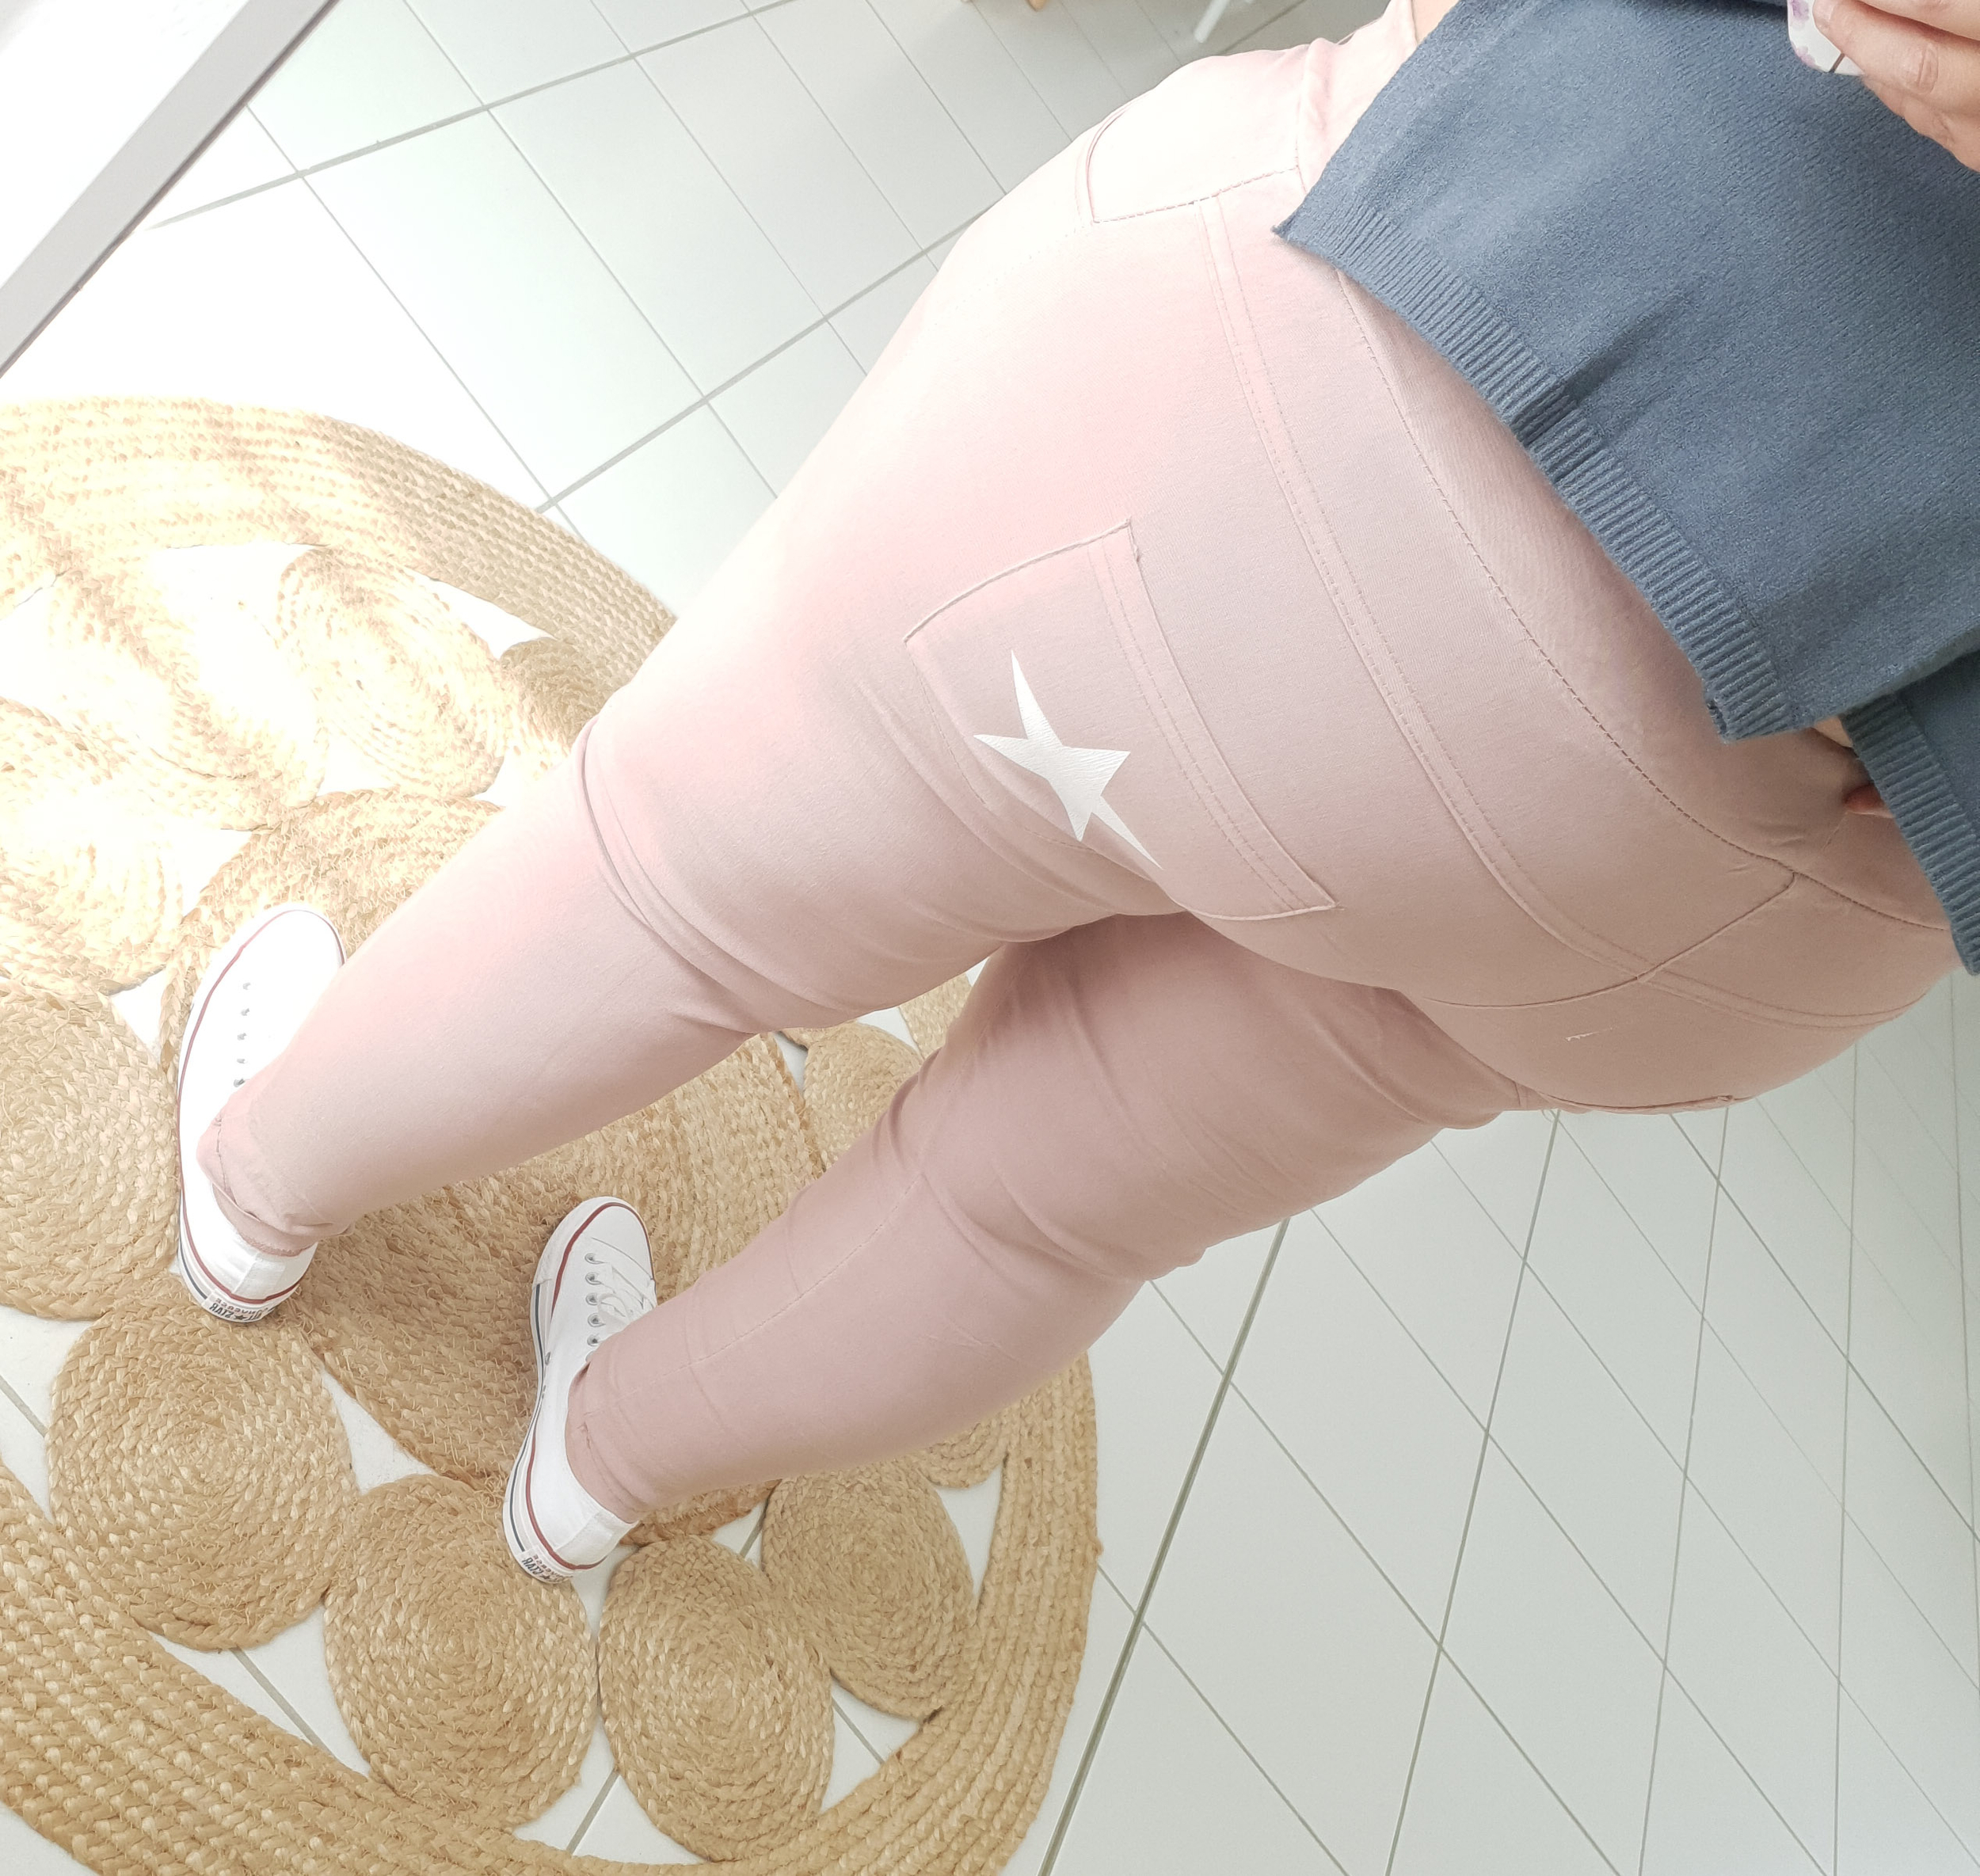 Le pantalon rose poudrée avec son étoile blanche sur la poche - Taille unique (46/50)